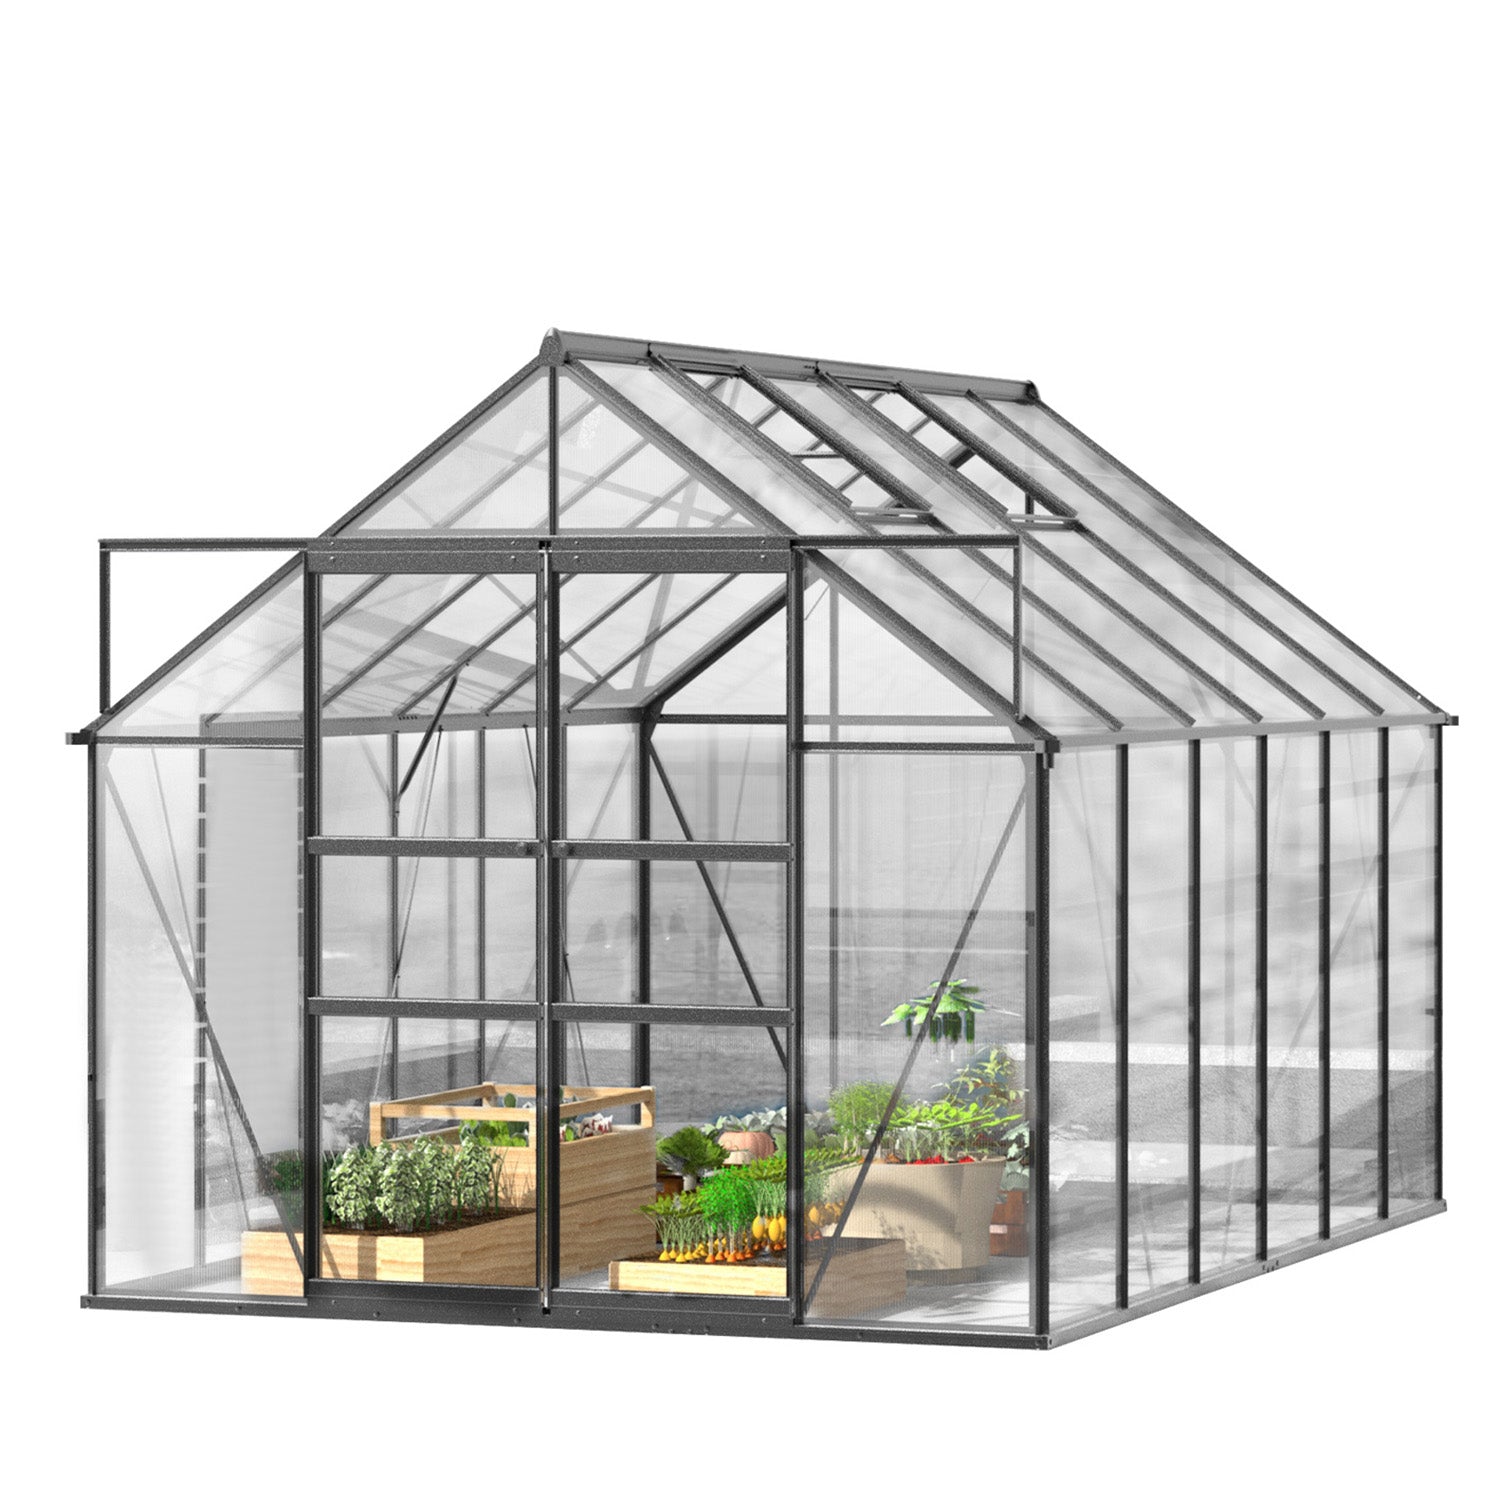 12x8 ft Walk-in Outdoor Greenhouse with Sliding Door, Vent Window, Rain Gutter